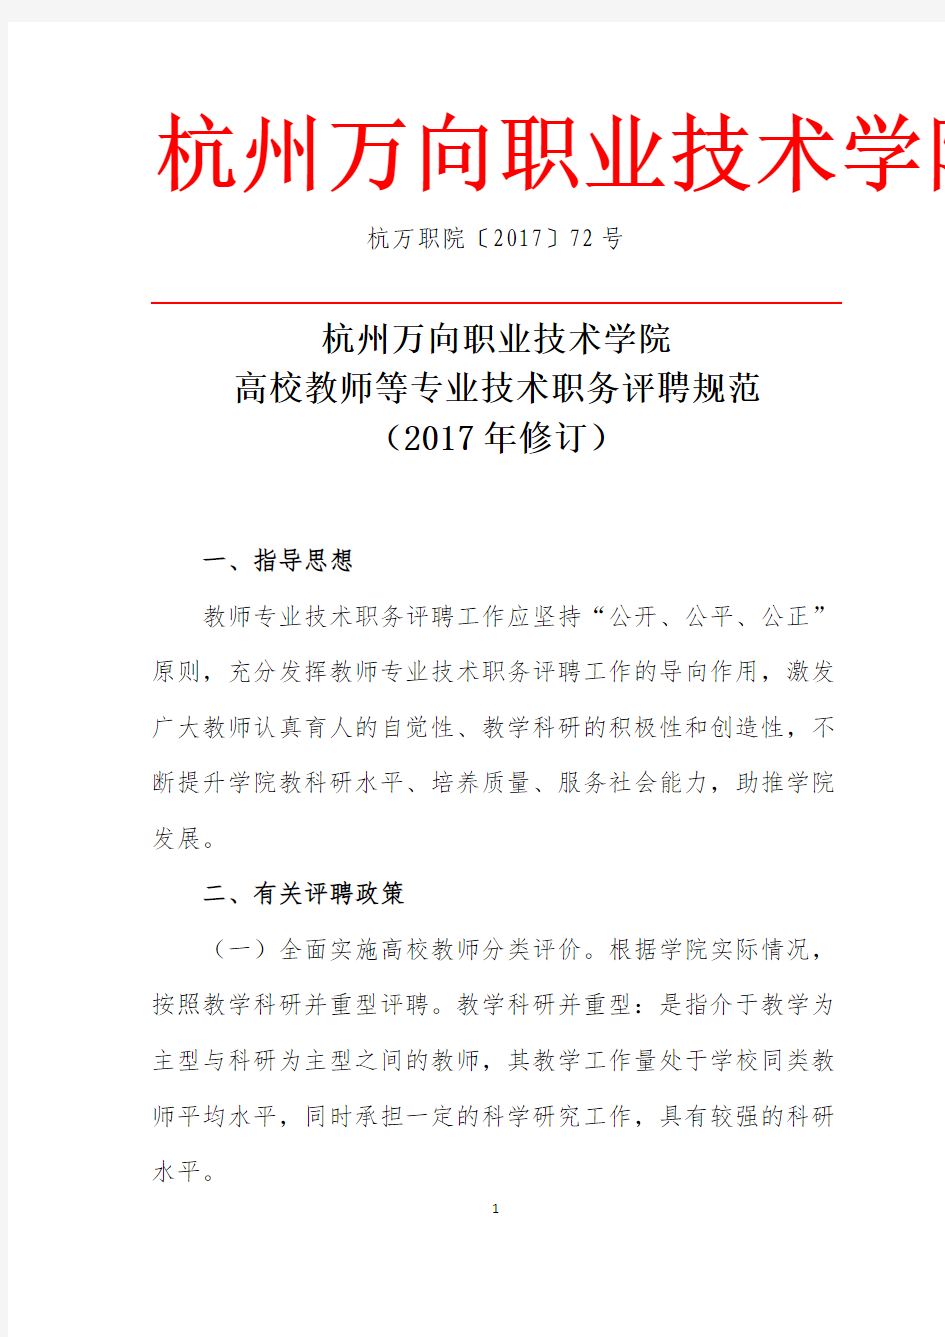 杭州万向职业技术学院高校教师等专业技术职务评聘规范(2017年修订)